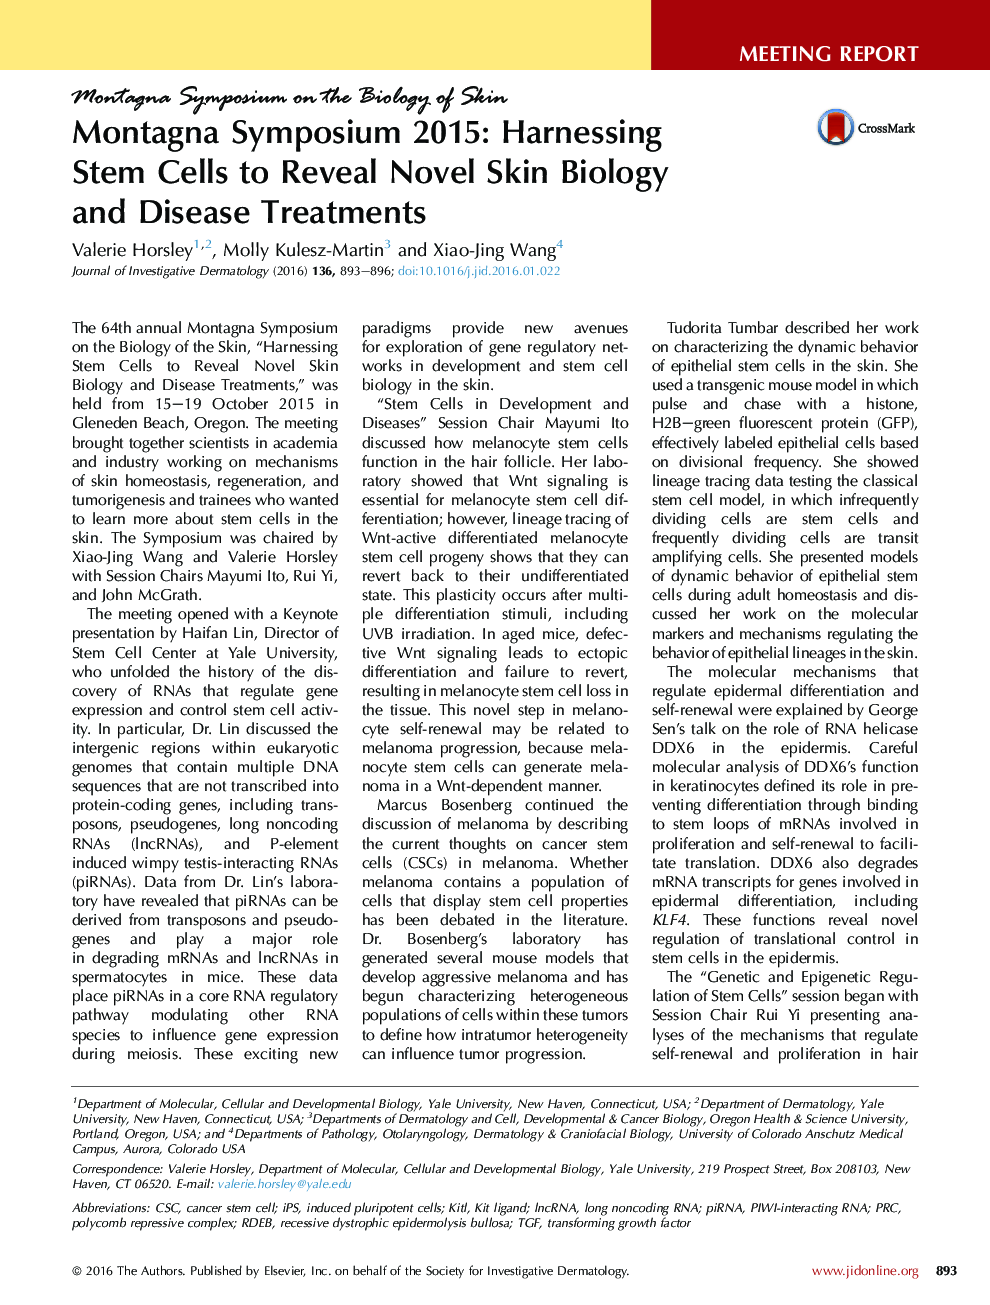 سمپلویس مونتاگا 2015: استفاده از سلول های بنیادی برای تشخیص زیست شناسی پوست و درمان بیماری های پوستی 